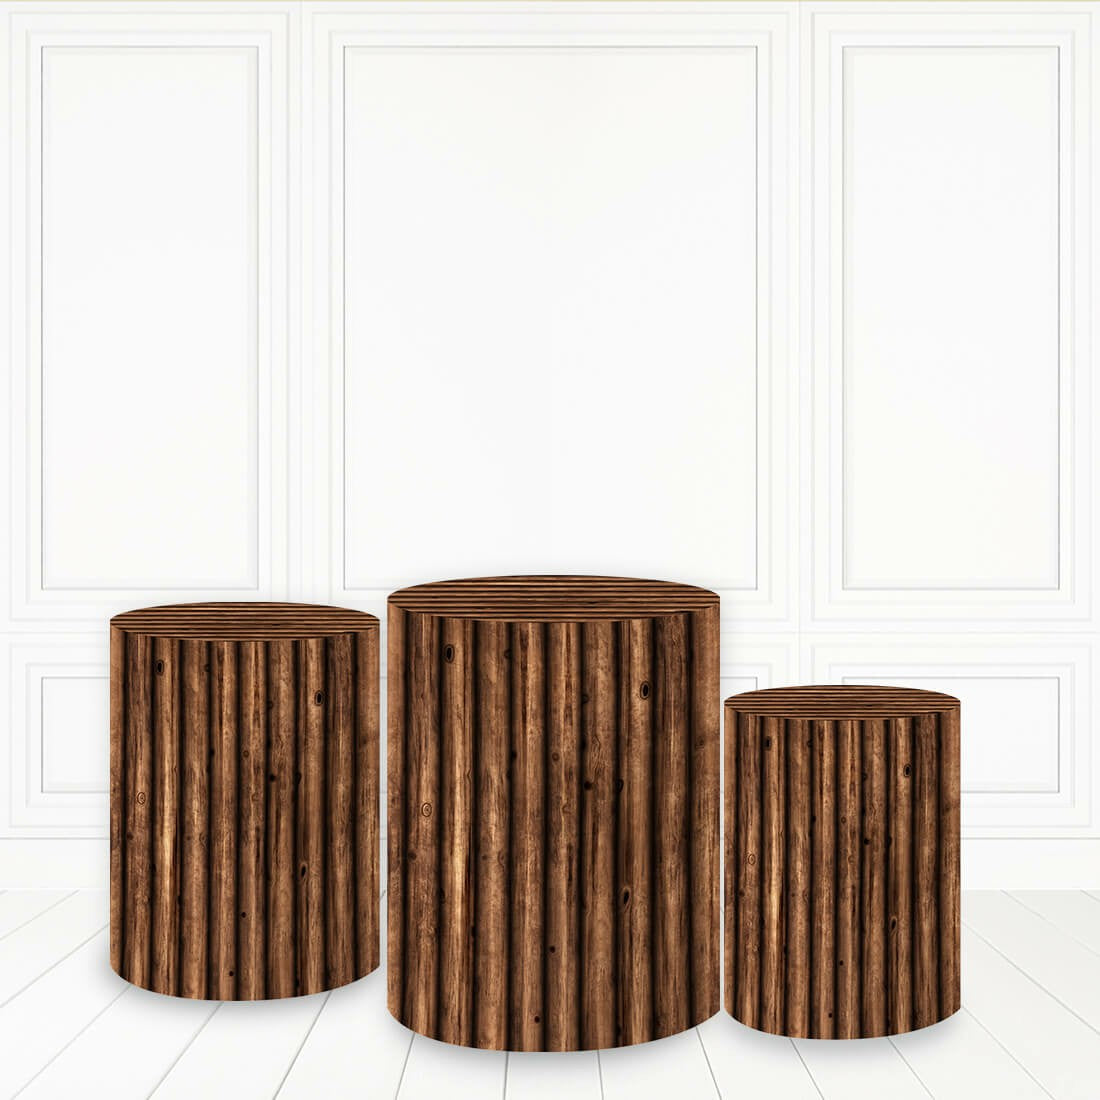 Lofaris Dark Brown Plinth Cover Wood Block Pattern Cake Table